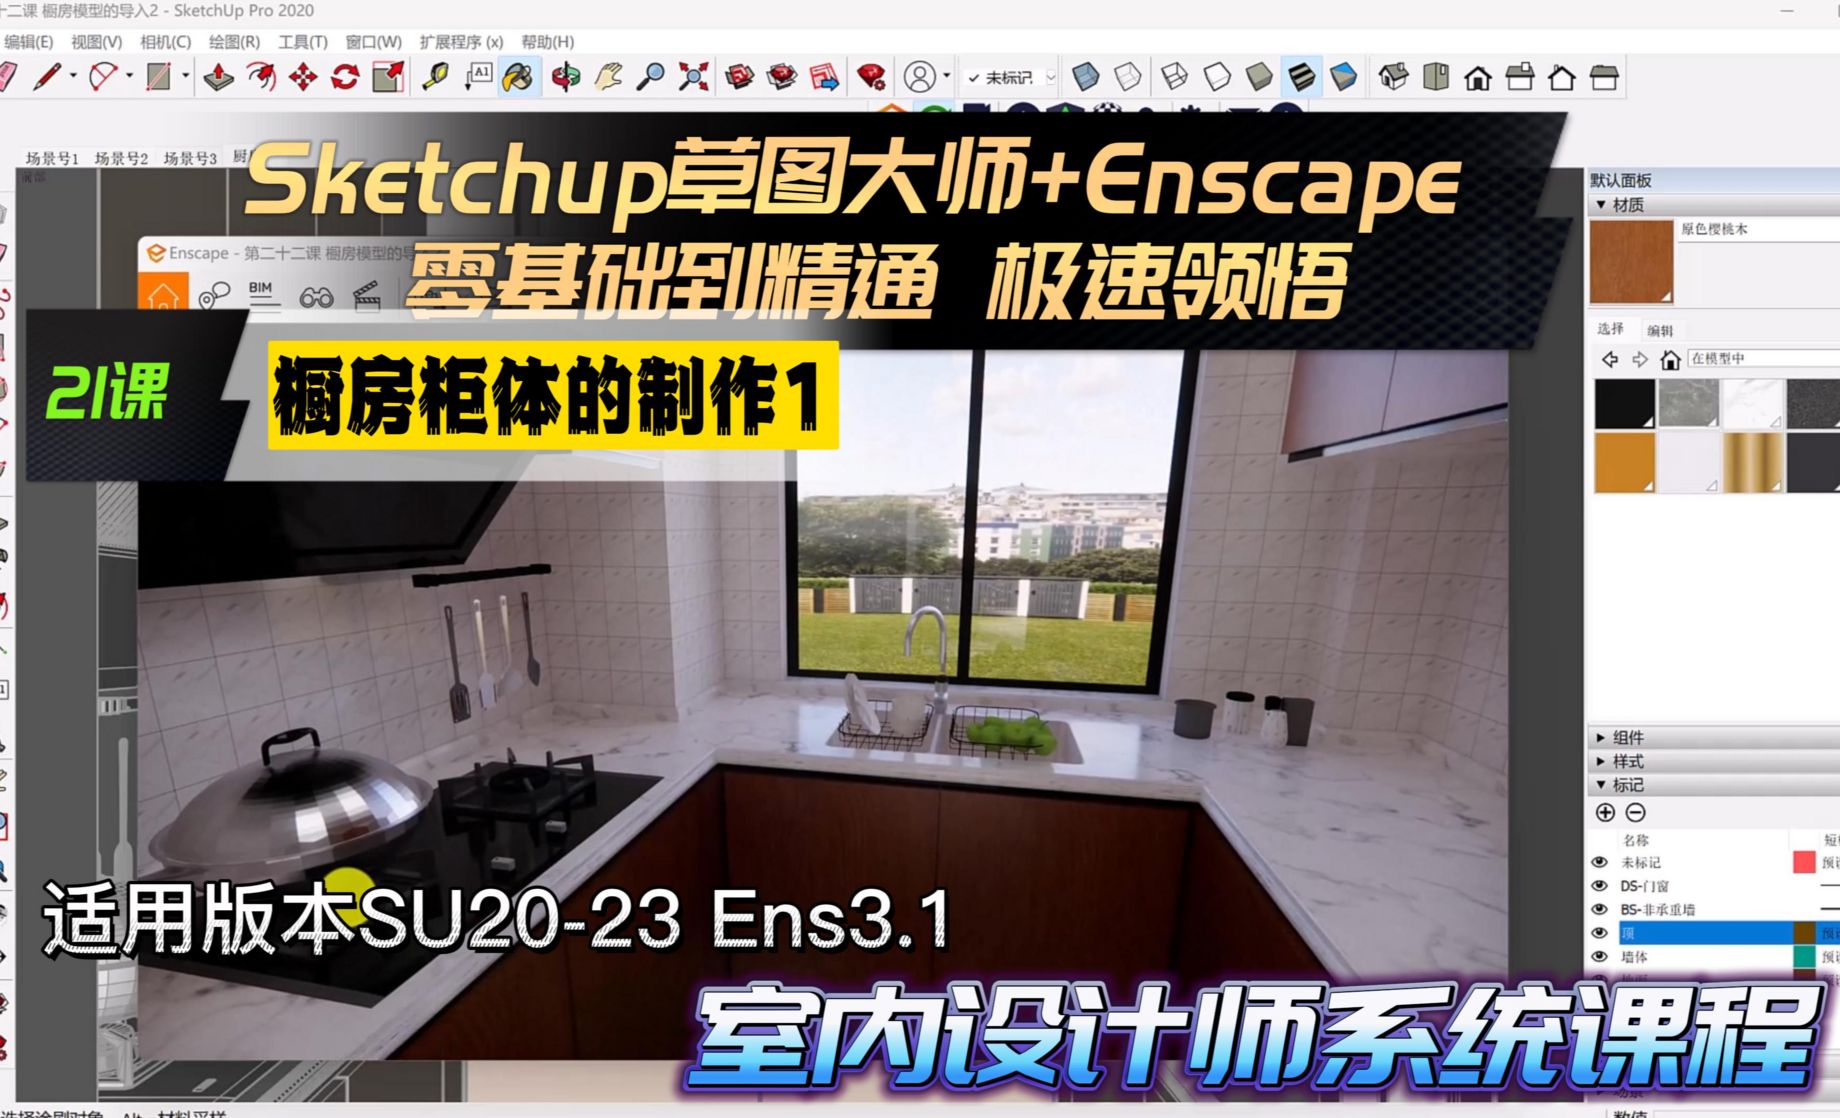 Sketchup+Enscape 室内设计极速领悟- 橱房柜体的制作1